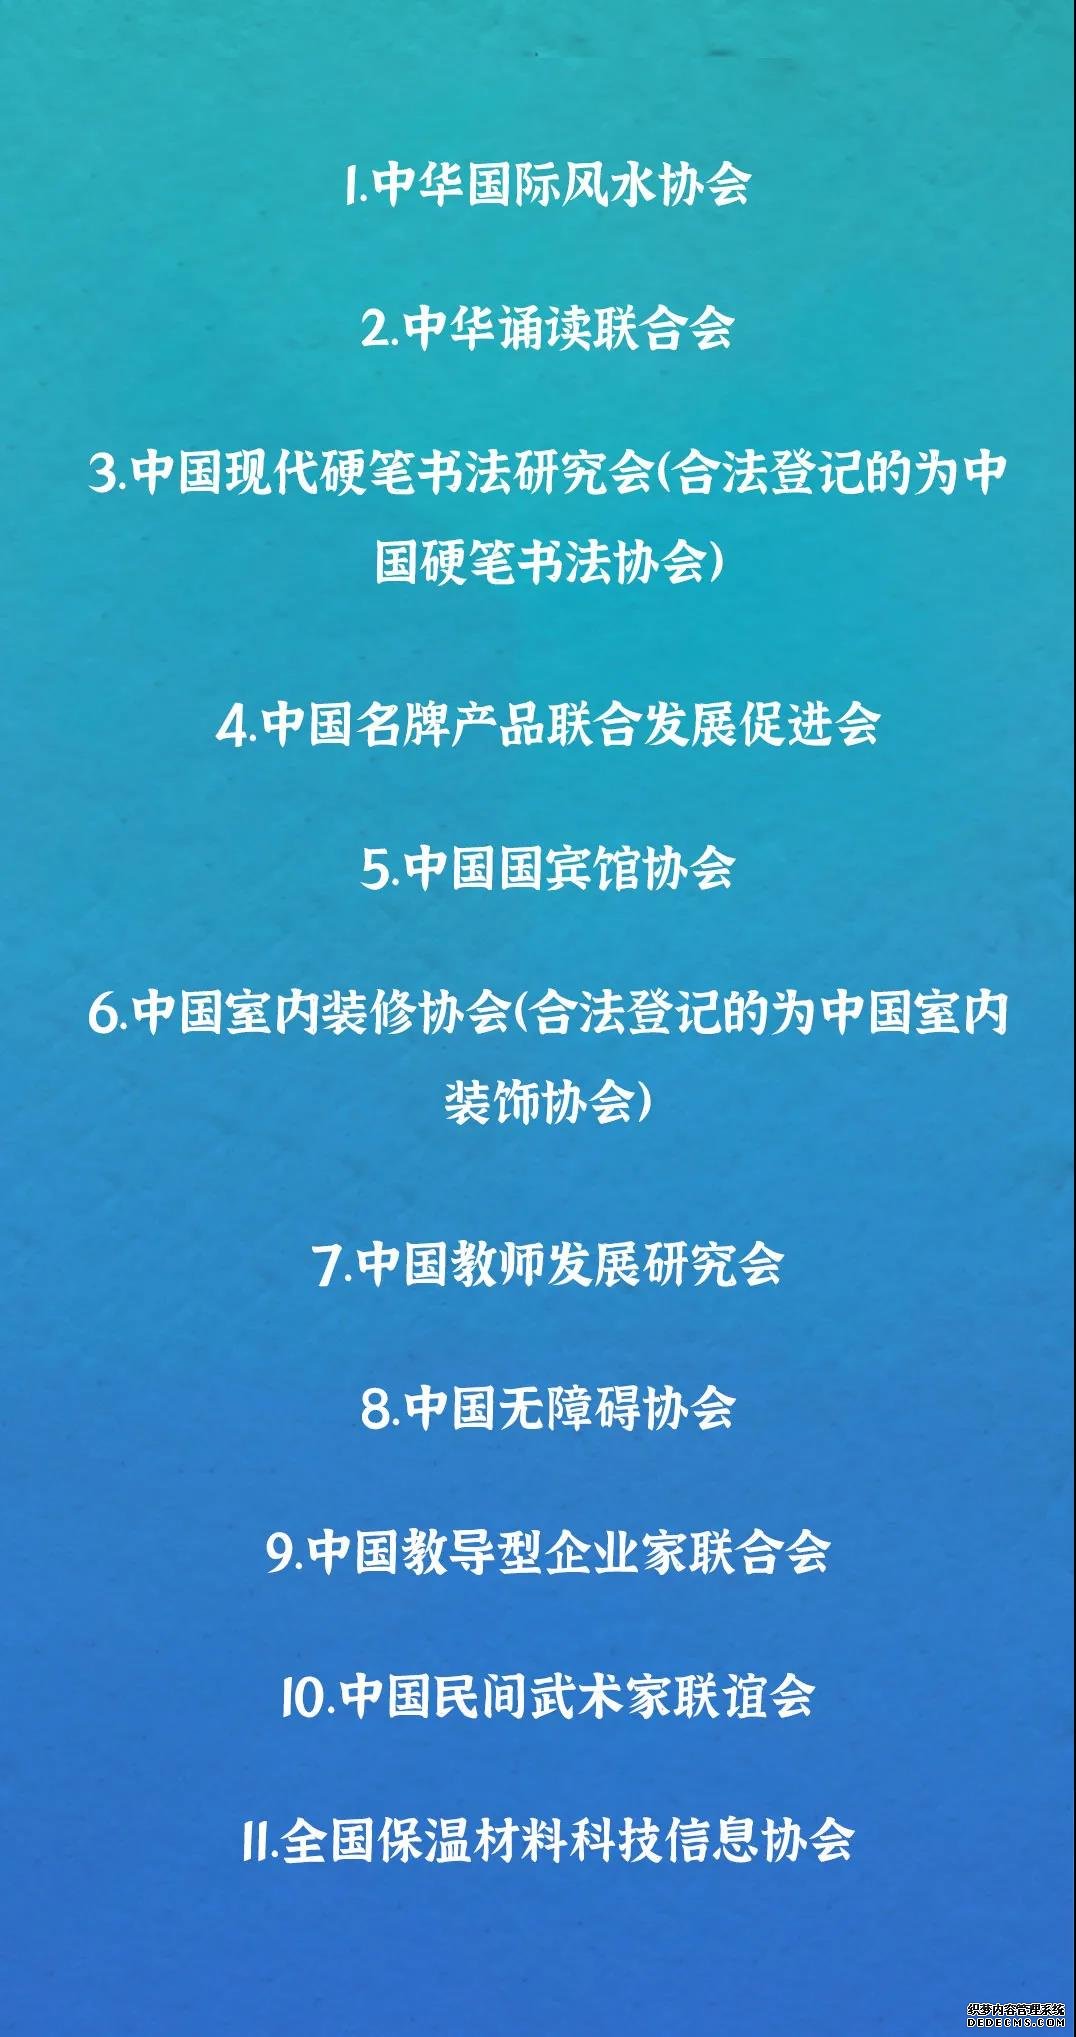 中国无障碍协会、中国教师发展研究会……2021年第三批涉嫌非法社会组织名单公布